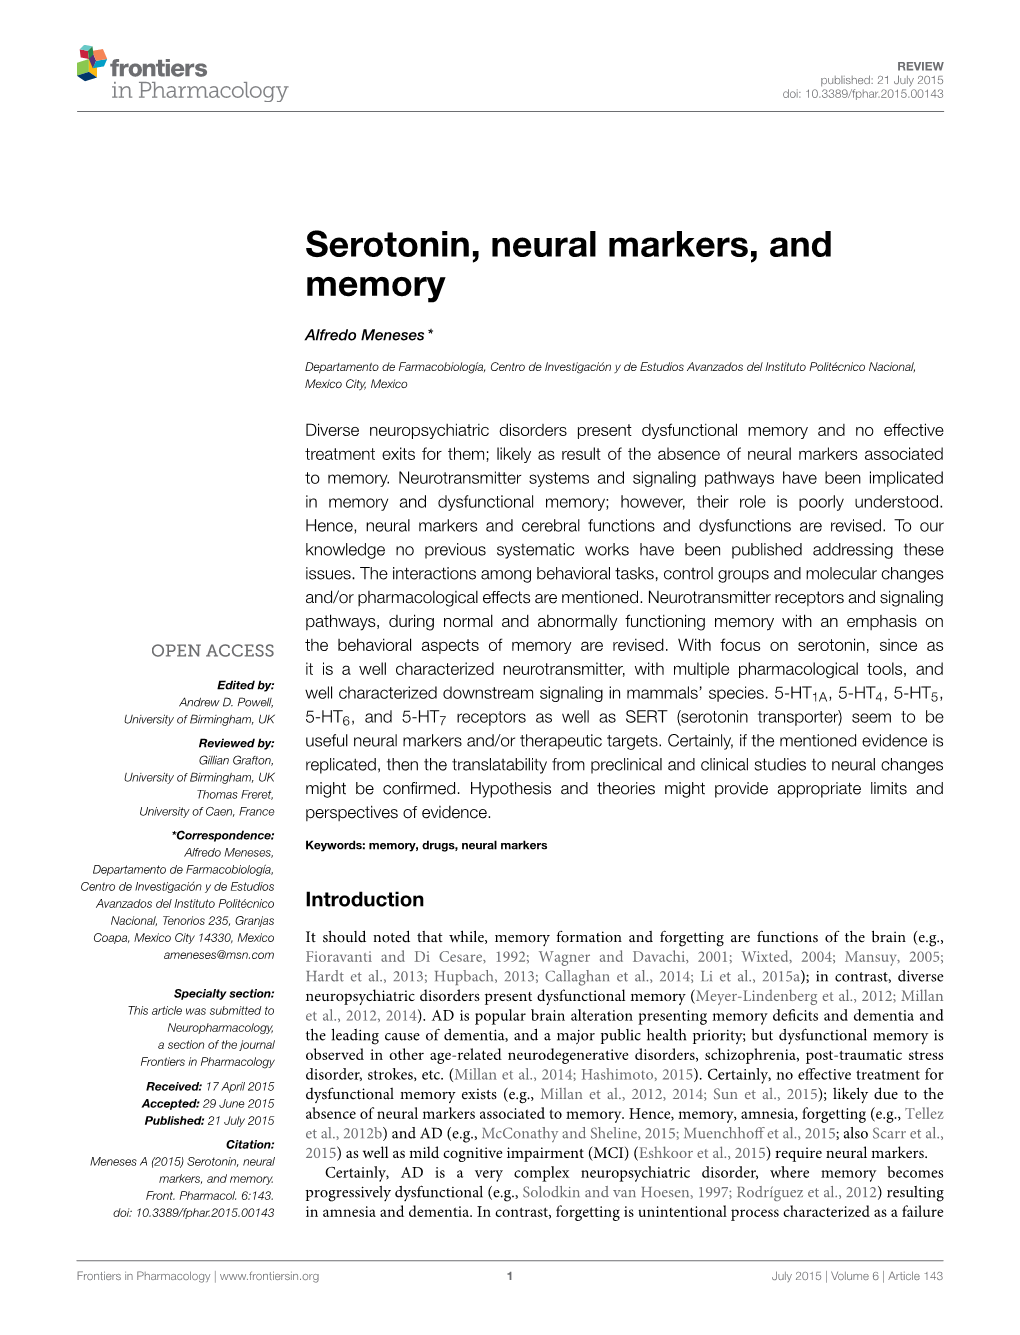 Serotonin, Neural Markers, and Memory